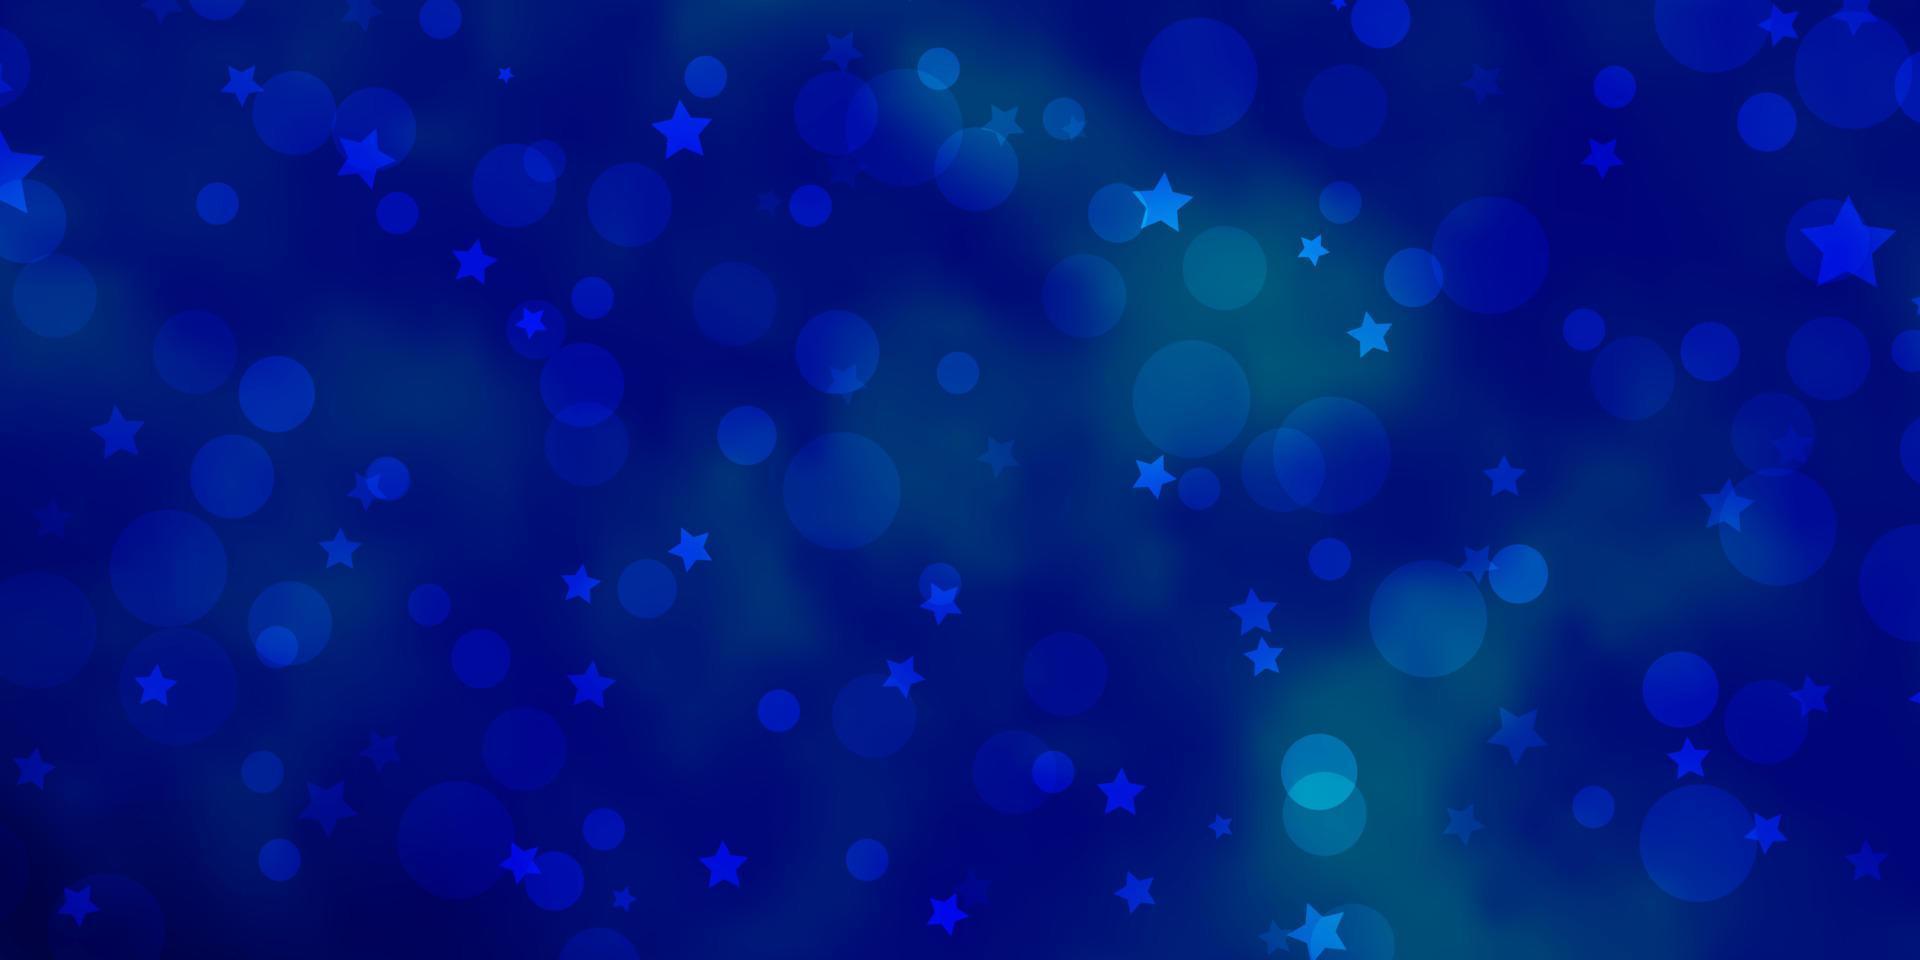 struttura di vettore blu chiaro con cerchi, stelle.